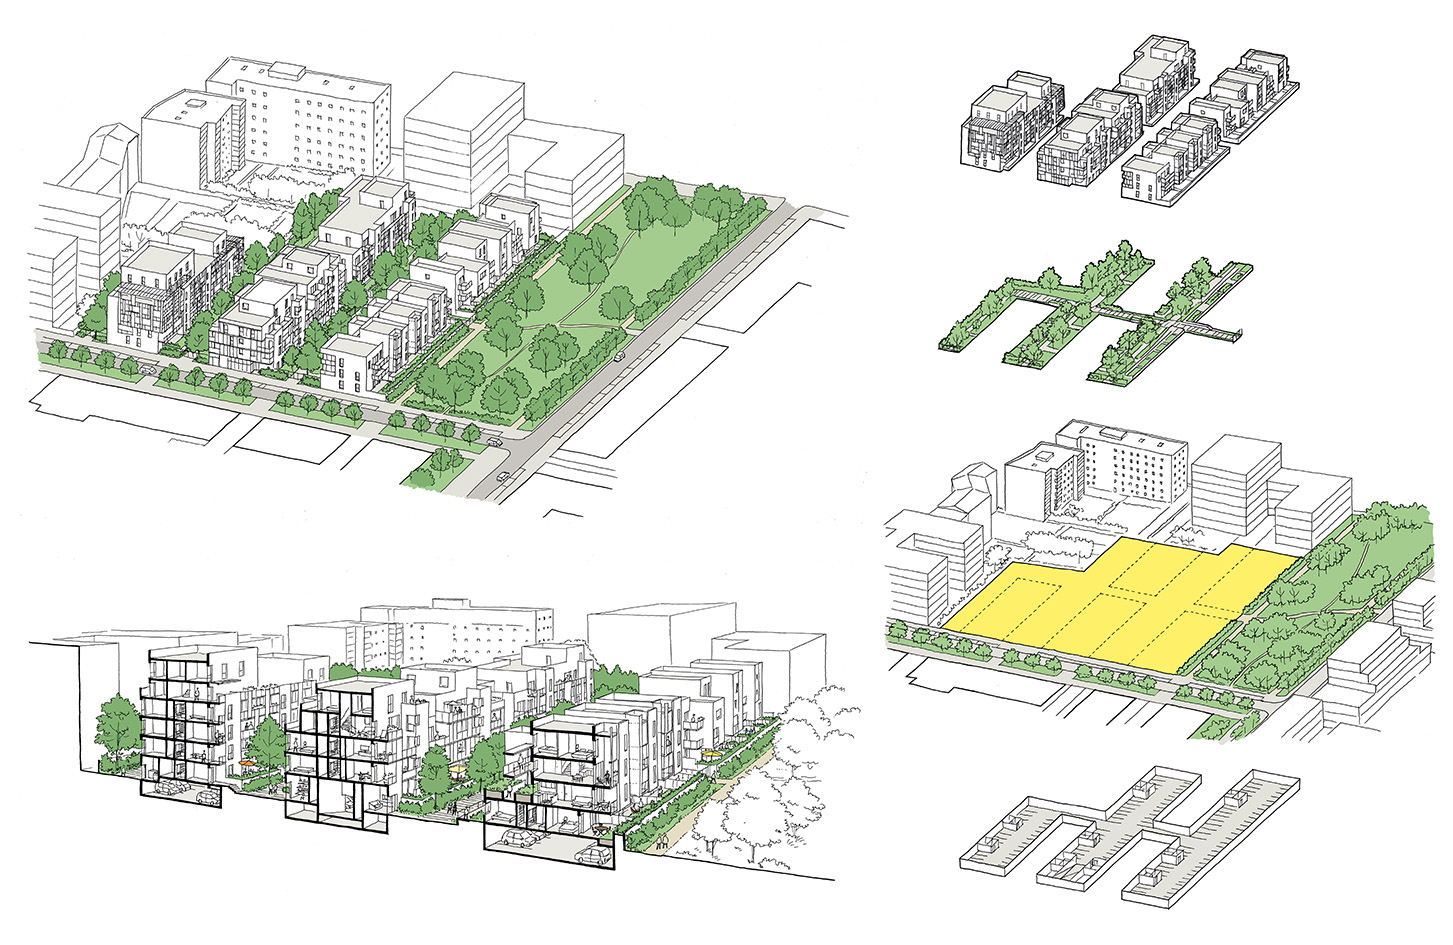 Concours pour un projet de logements à Villeurbanne - Rue Royale architectes / Siz'ix architectes - 2016